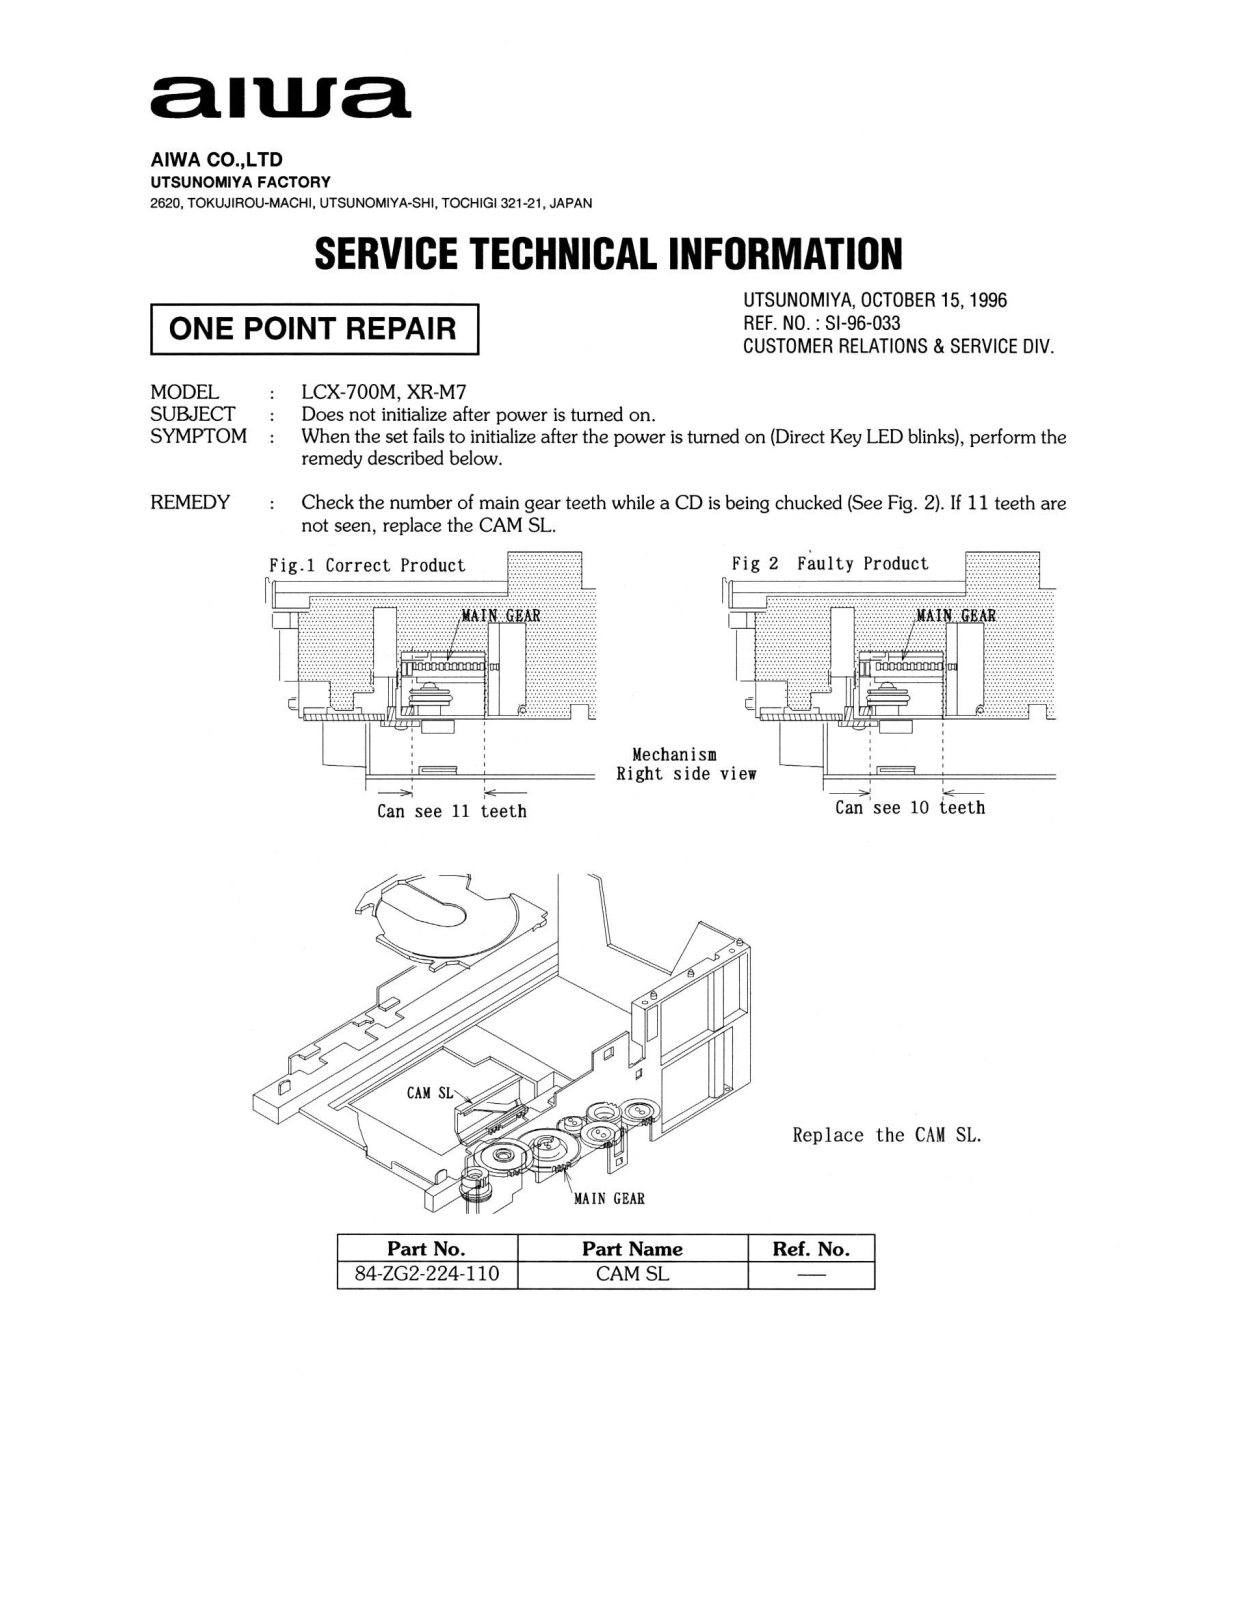 AIWA LCX-700M, XR-7M Service Manual